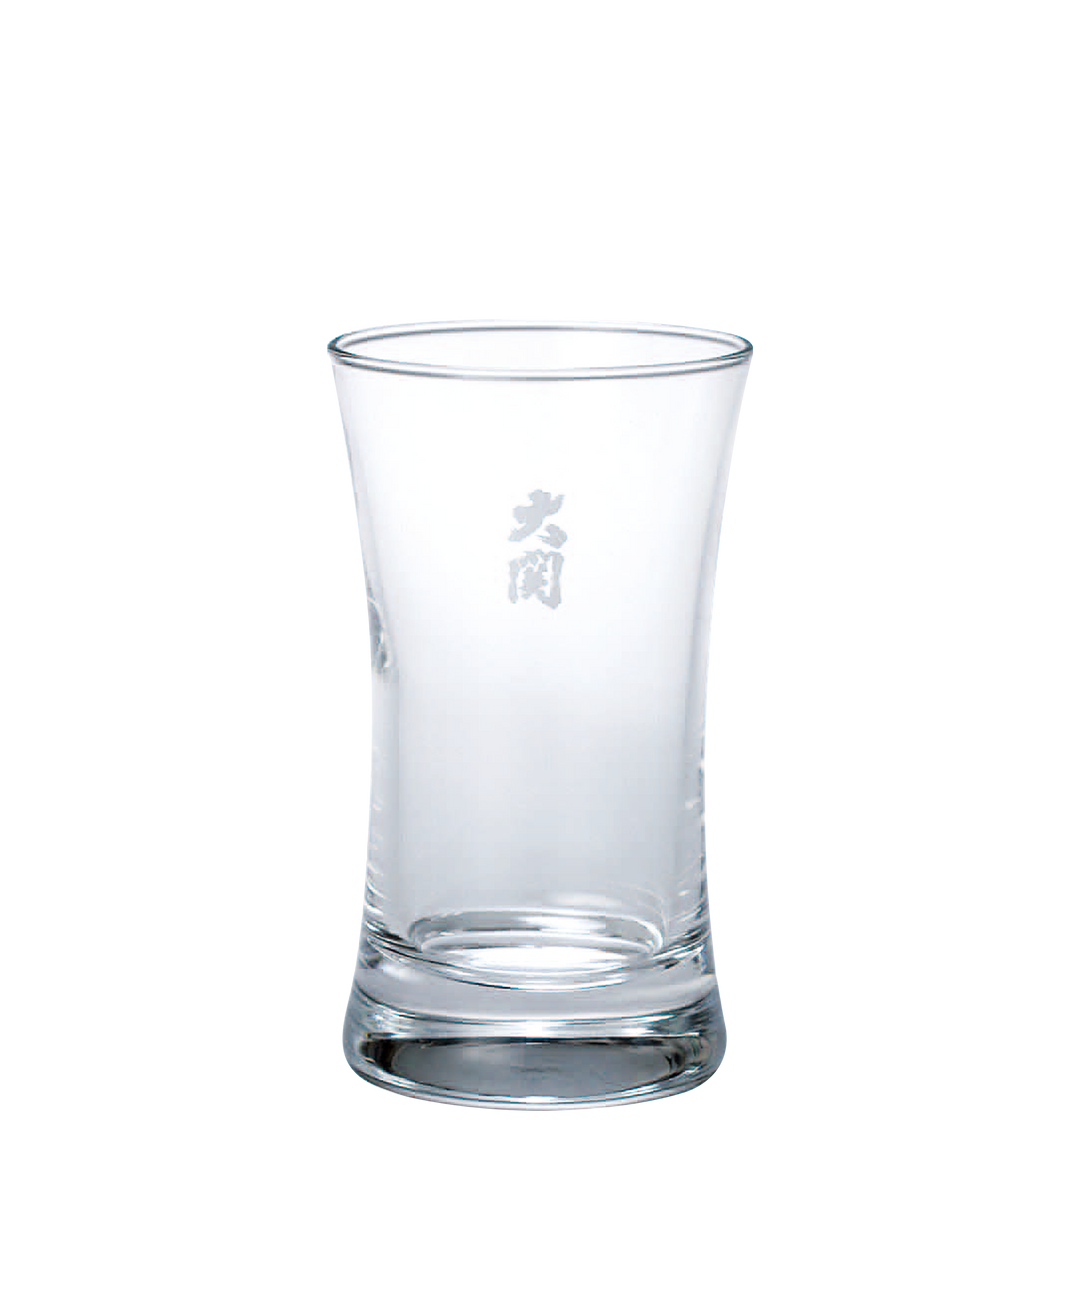 OZEKI Reisyu Sake glass